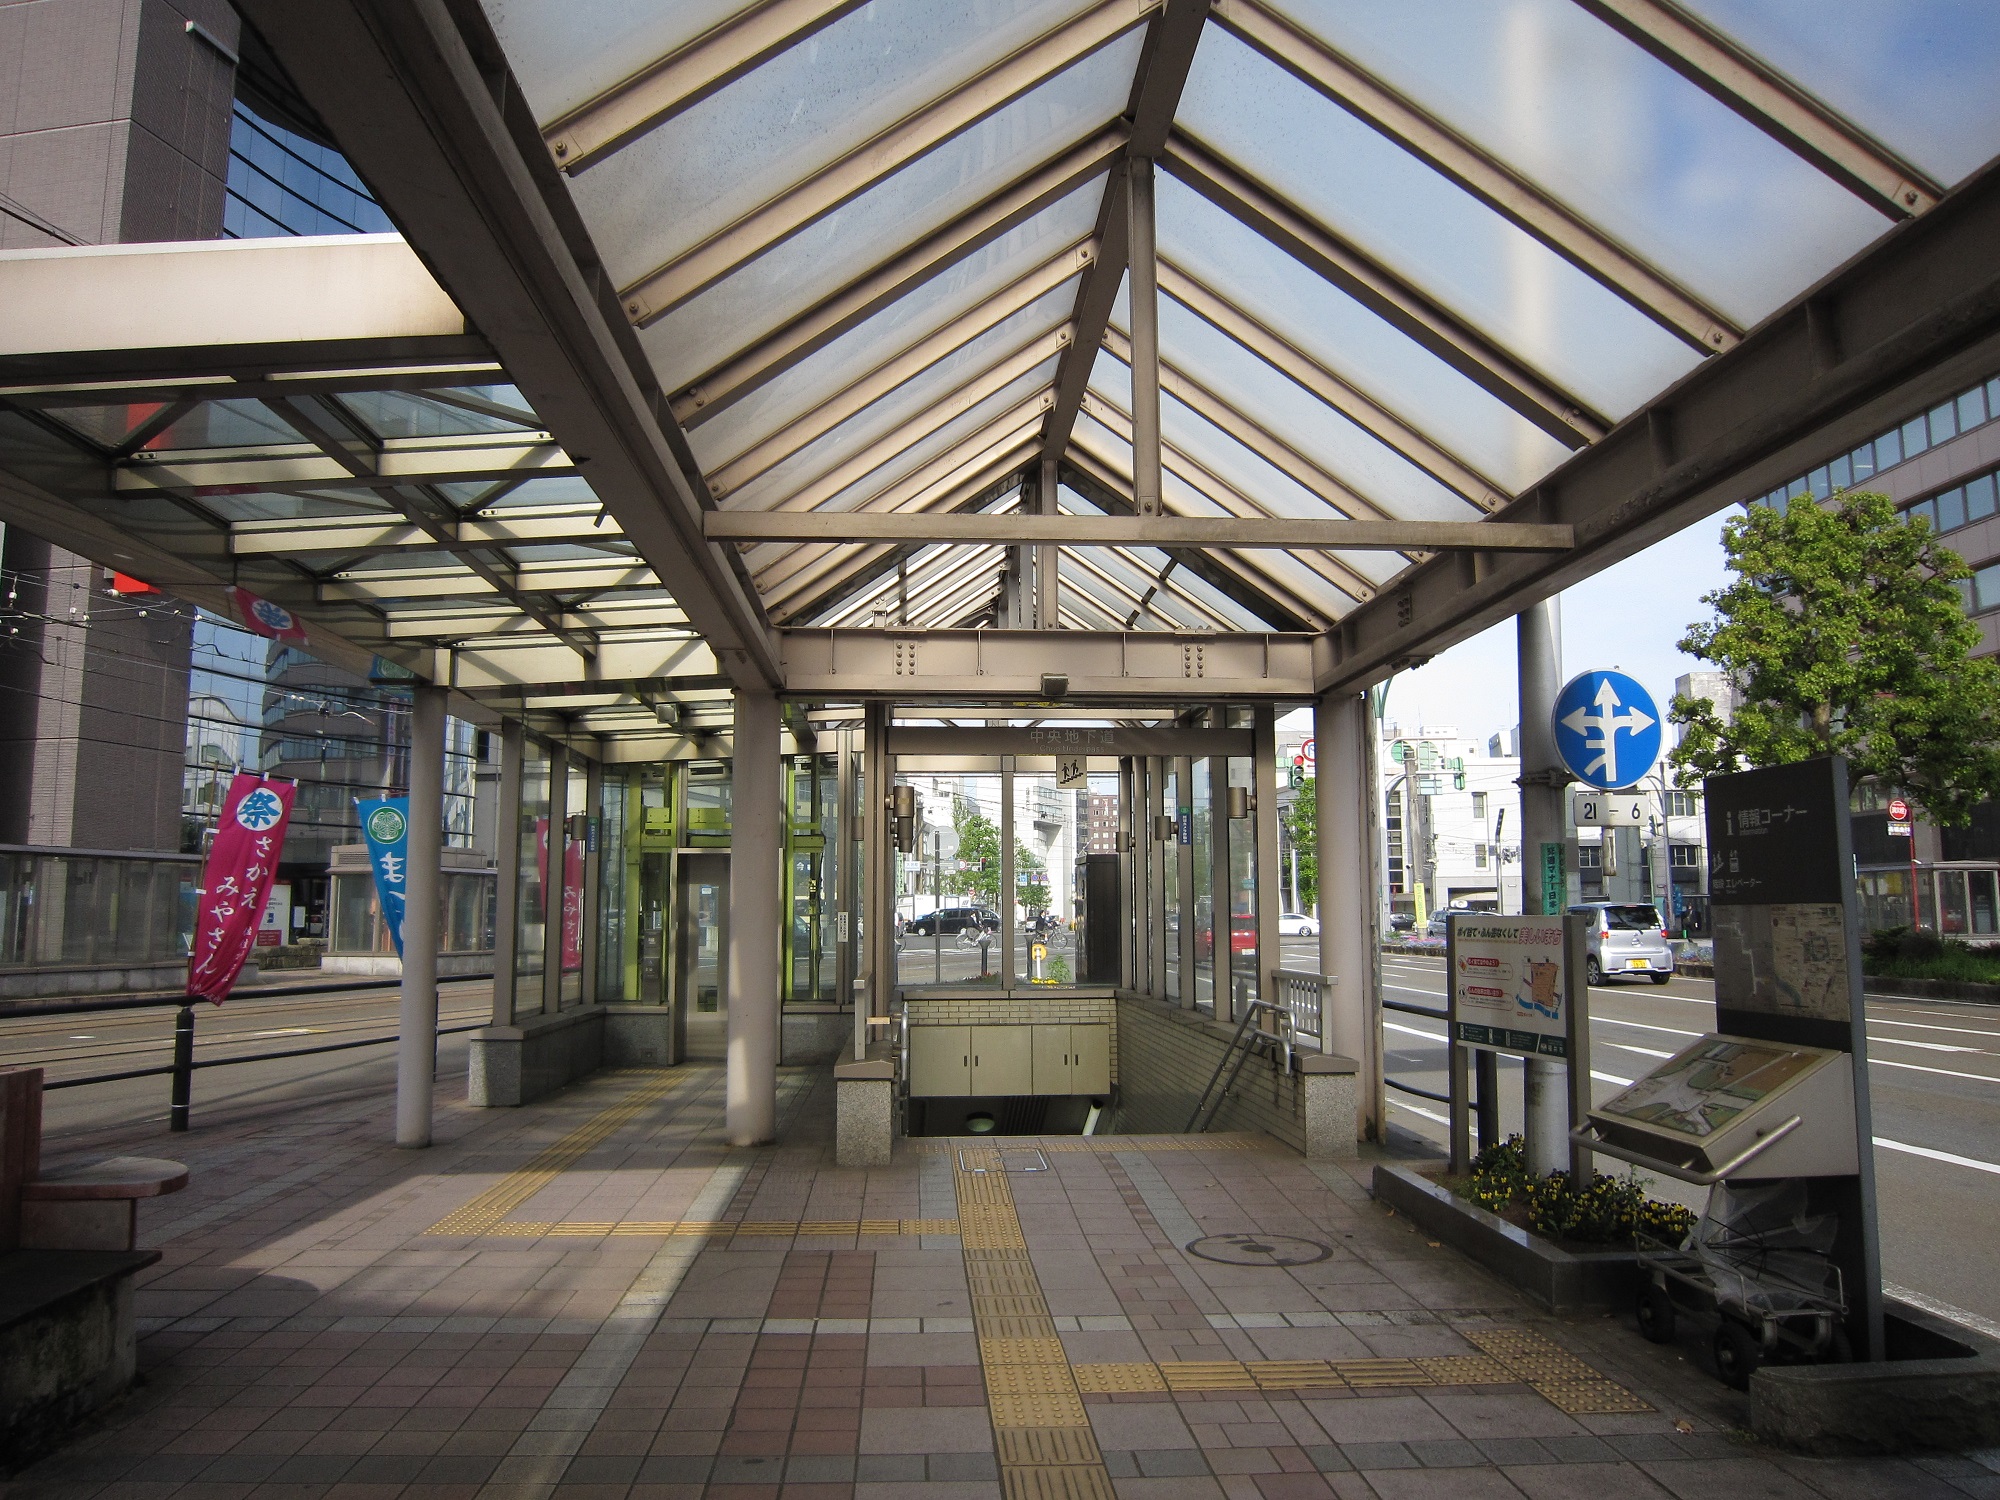 福井市のメインストリート 福井駅前大通り 地下道があるものの寸断されています